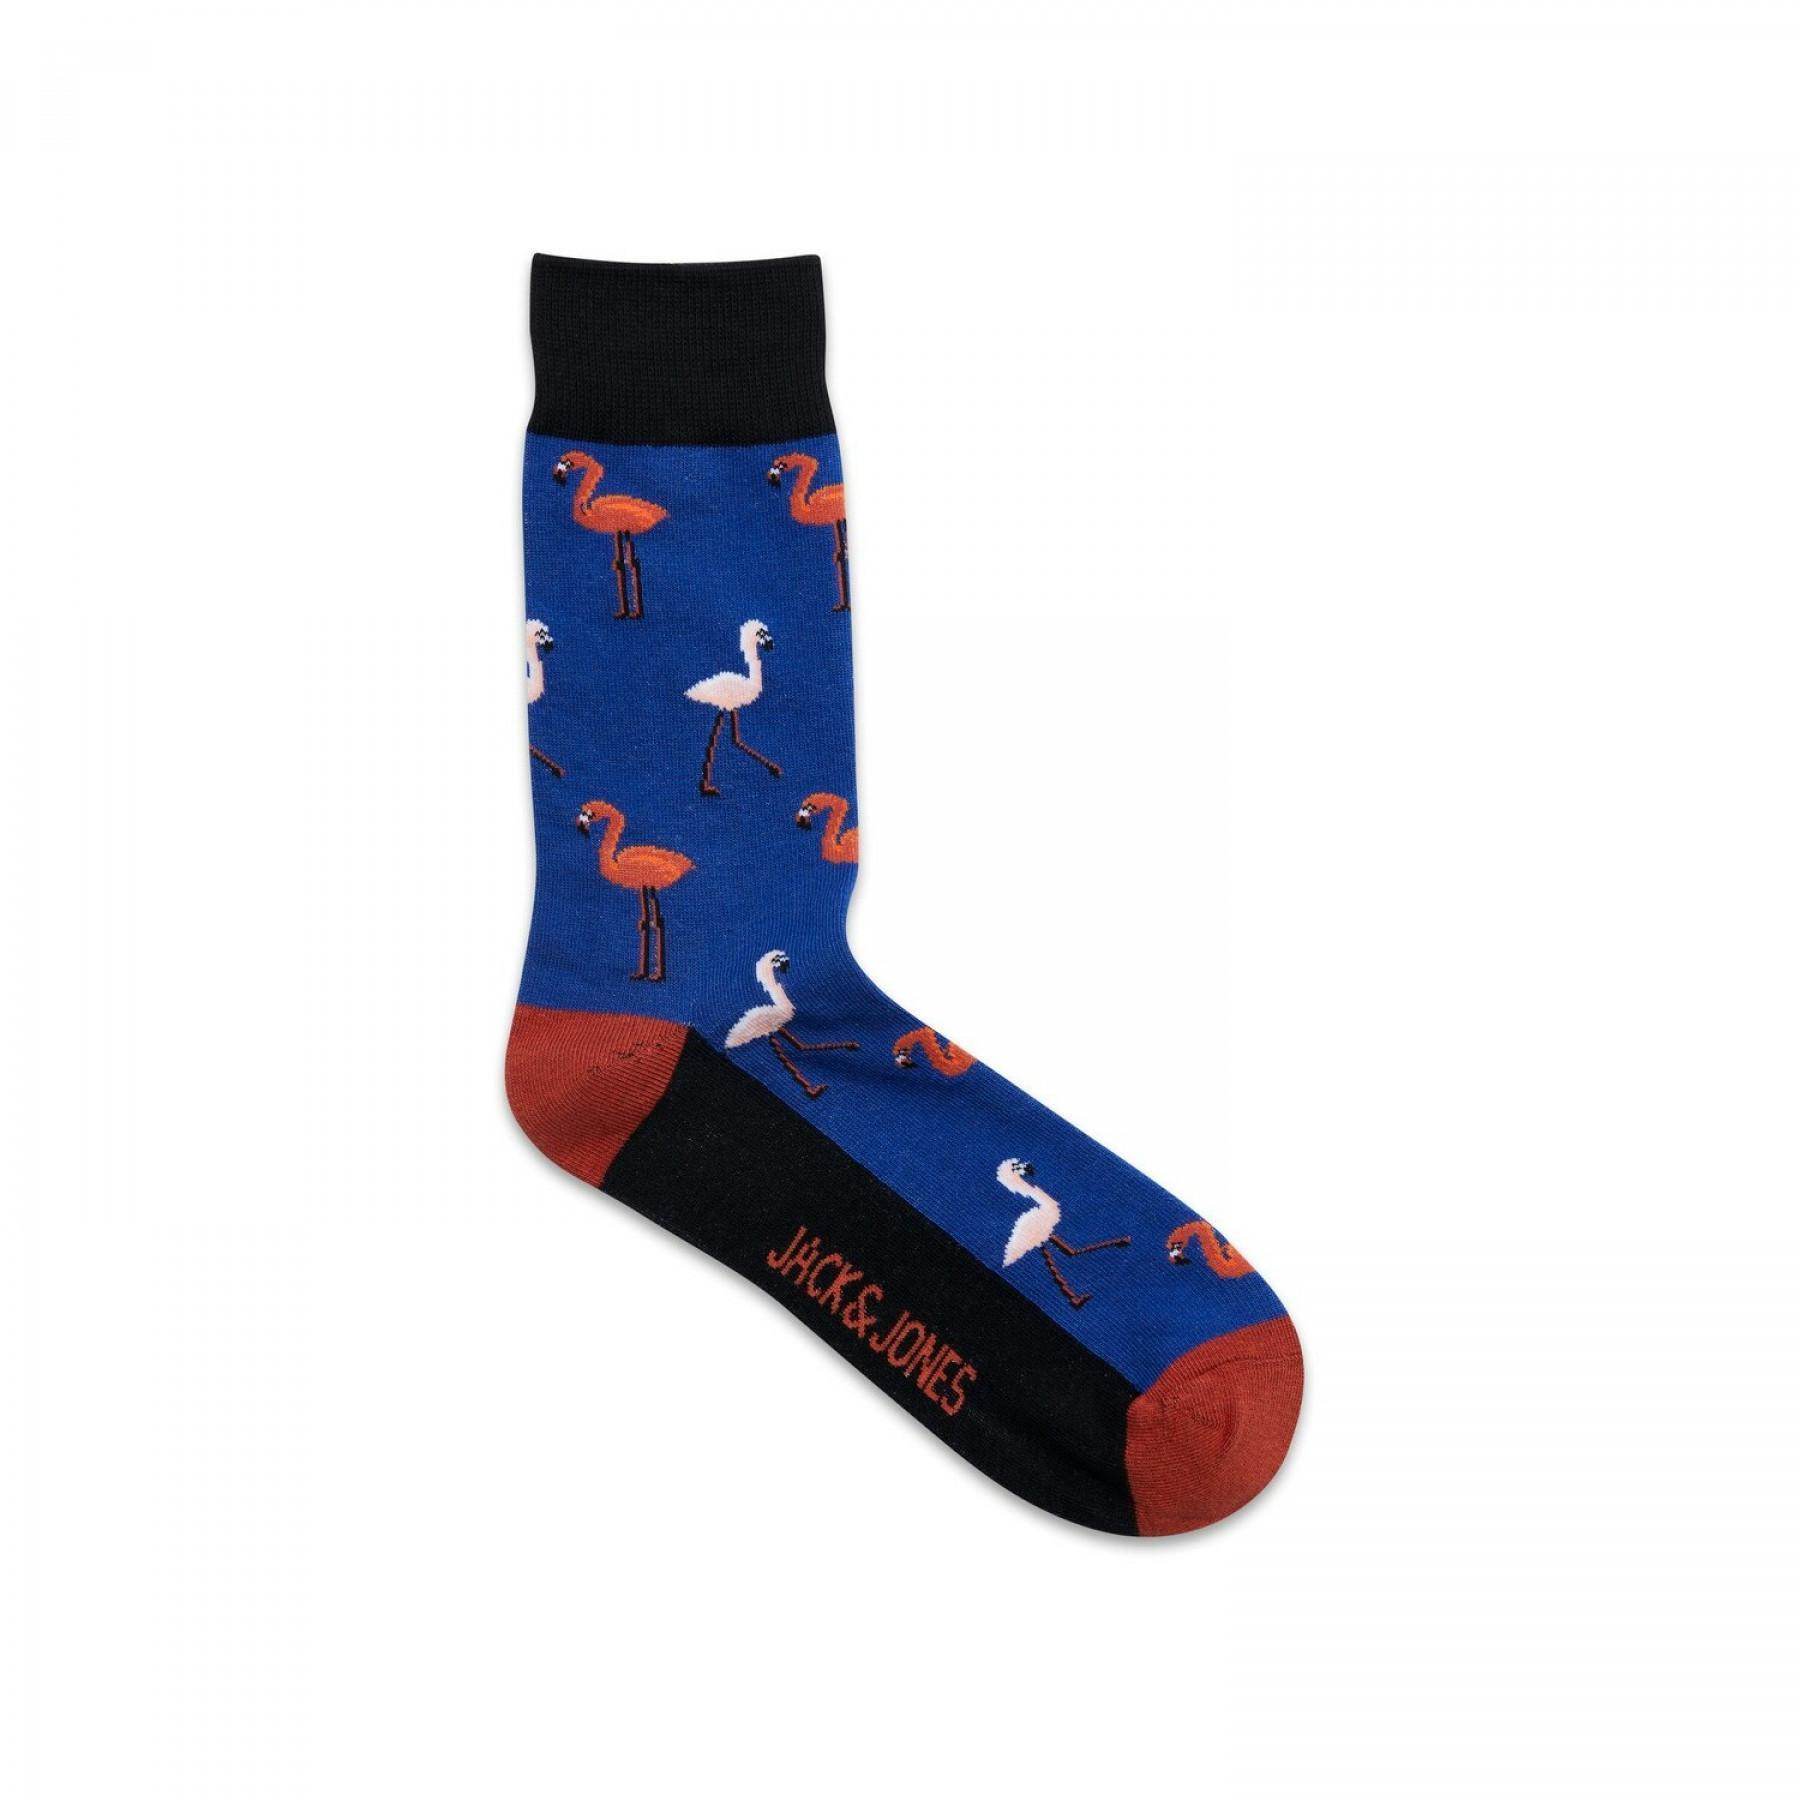 Packung mit 5 Paar Socken Jack & Jones summer flamingo